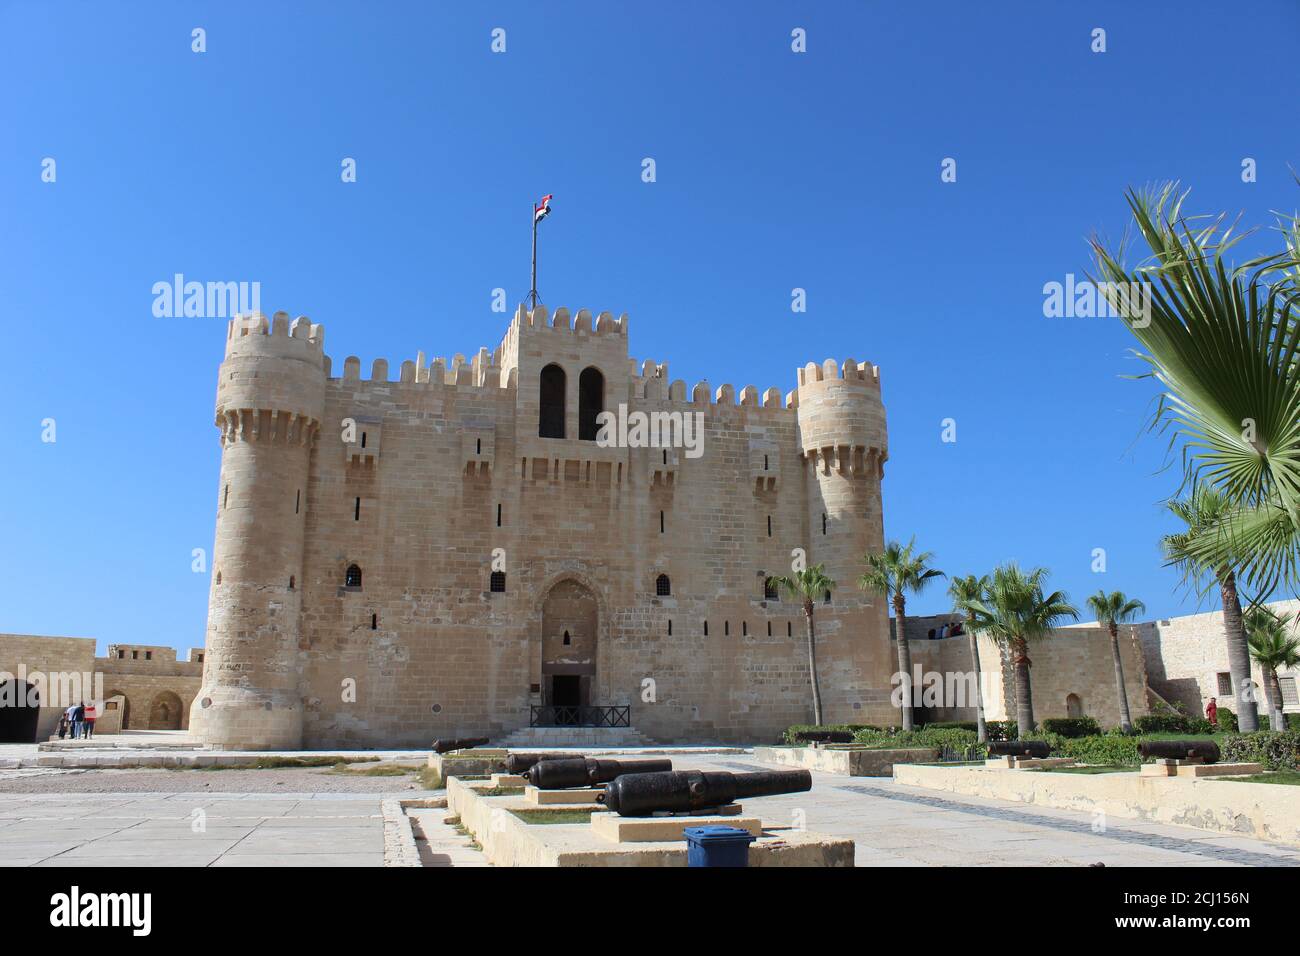 Vista frontale della Cittadella di Qaitbay Qaitbay Fort, è una fortezza difensiva del 15 ° secolo situata sulla costa mediterranea del mare. Castello, porto Foto Stock